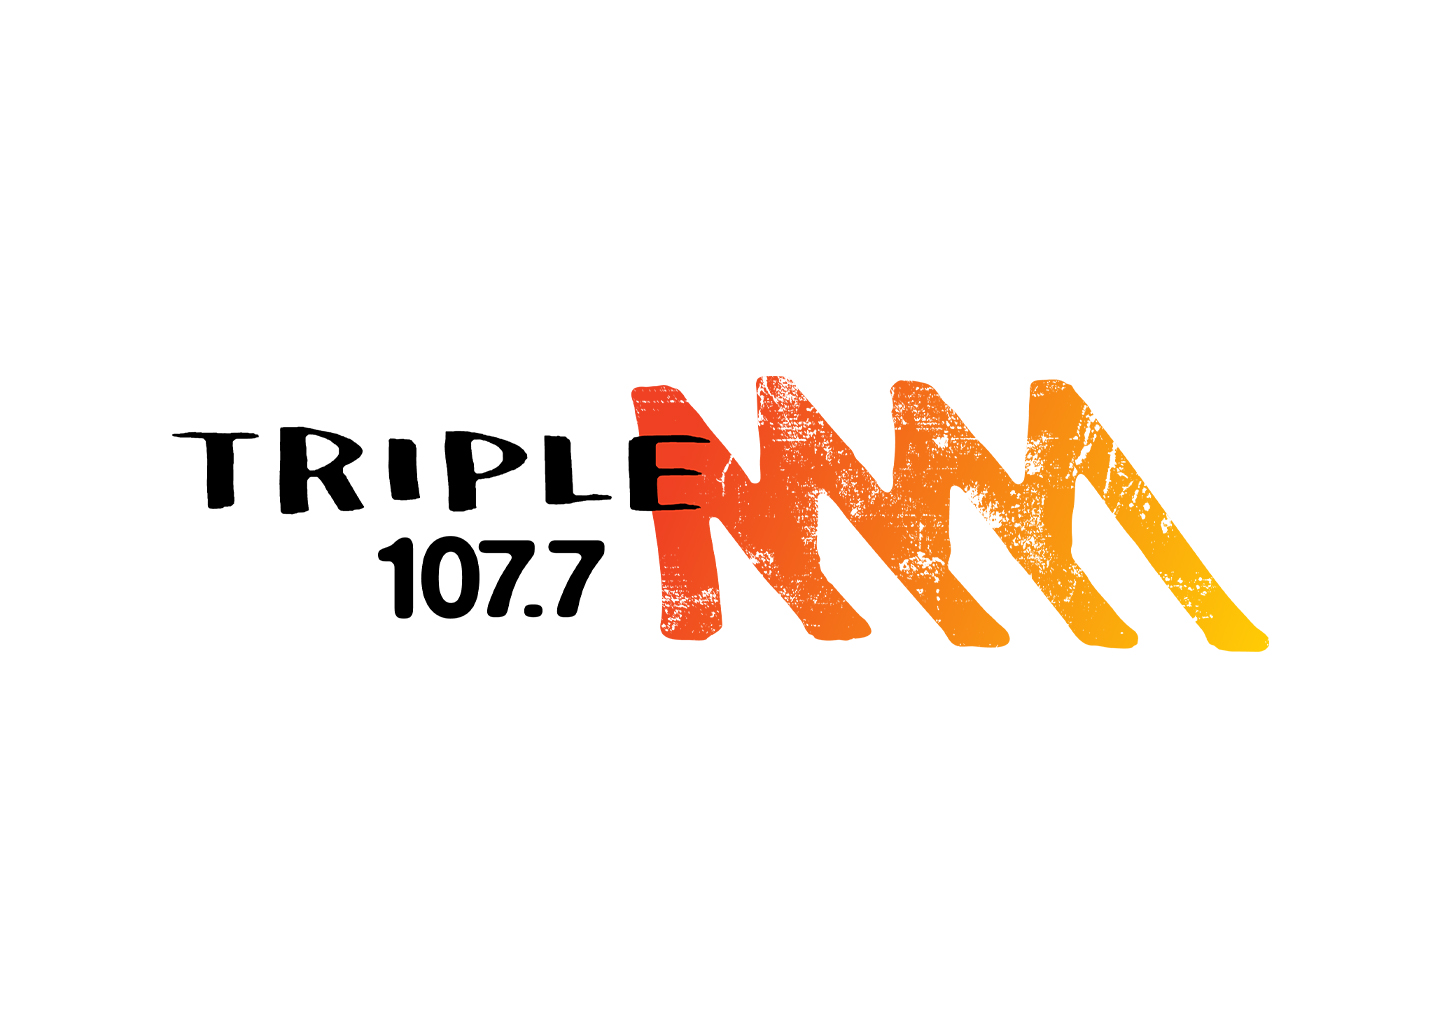 Triple M 107.7